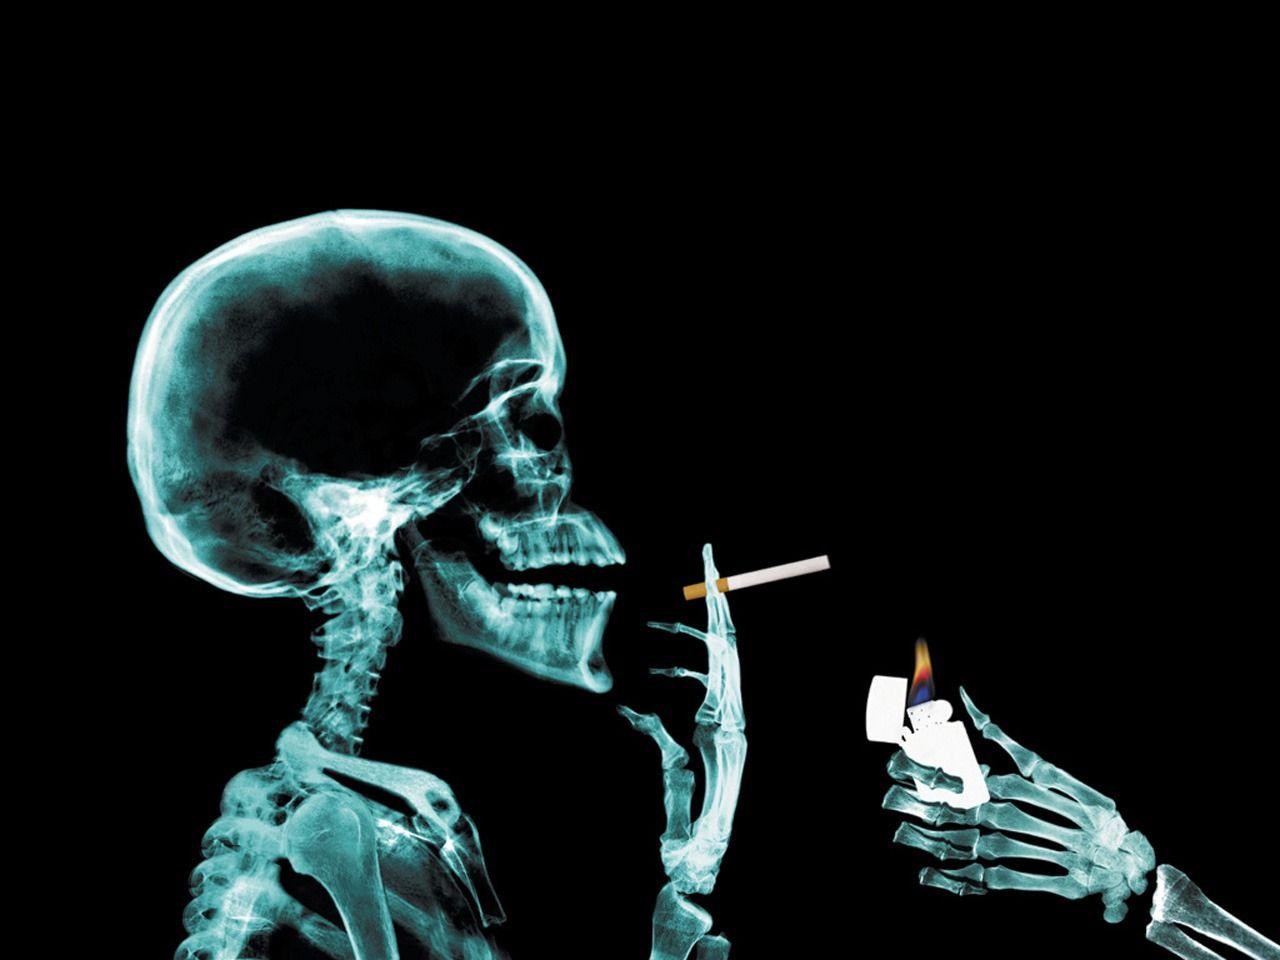 دانلود رایگان عکس رادیولوژی انسان در حال سیگار کشیدن